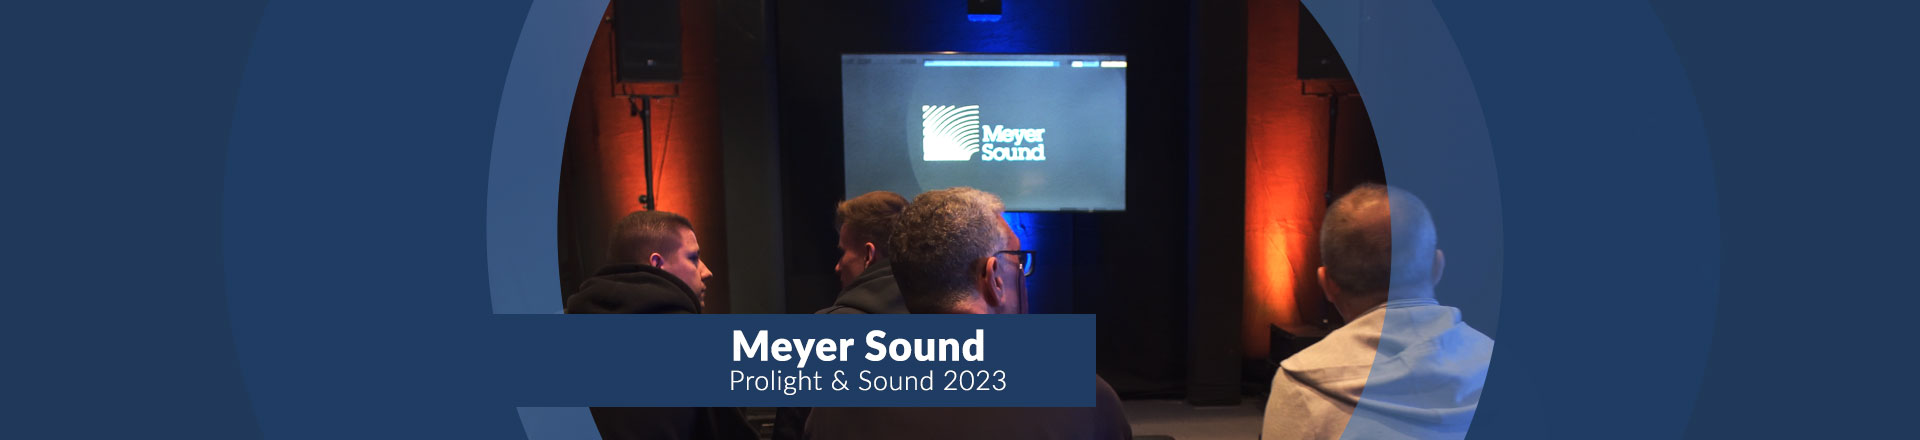 Bardzo ciekawy program Meyer Sound